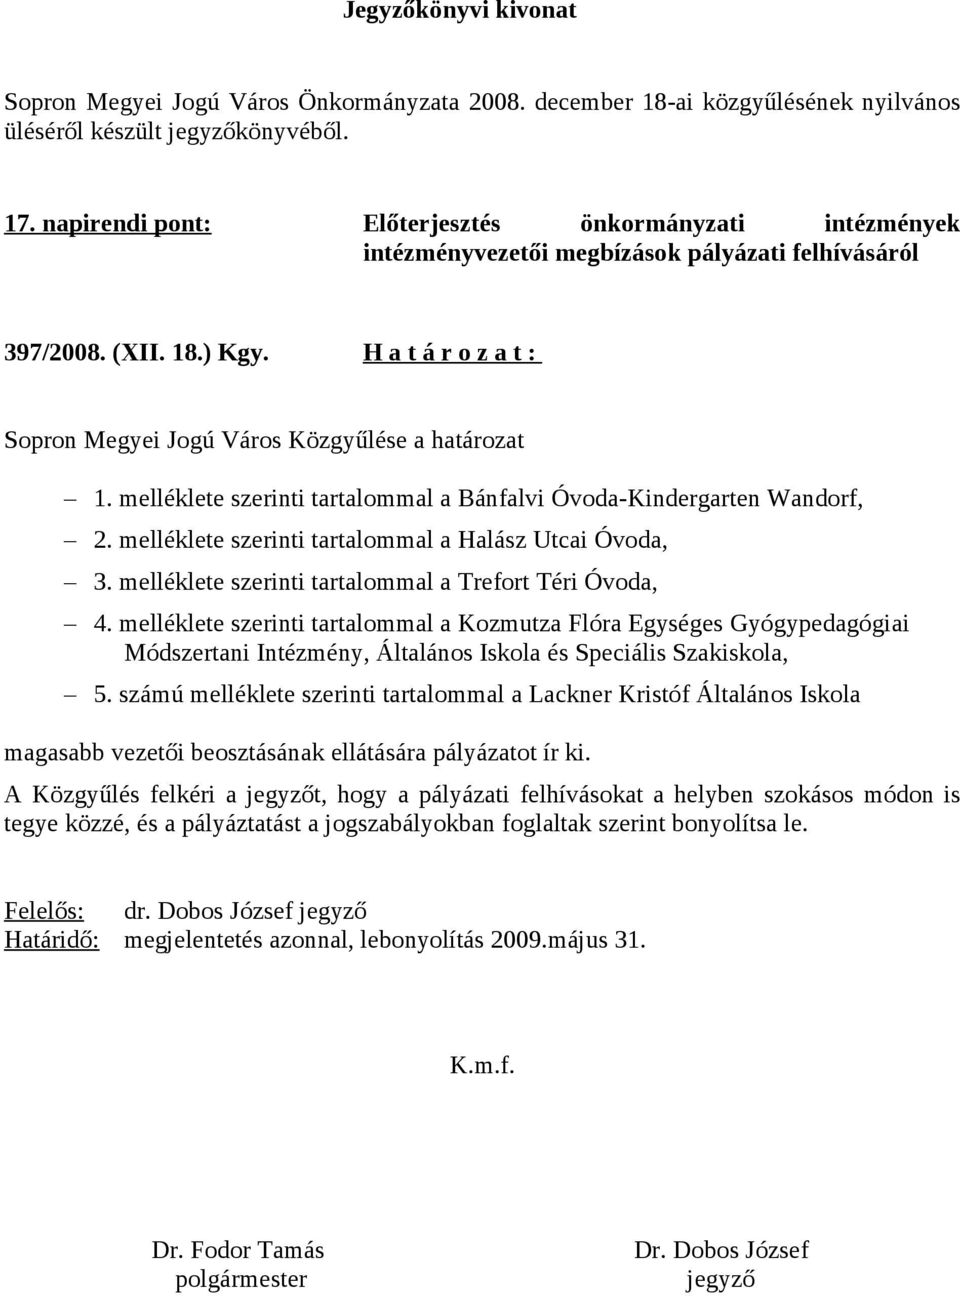 H a t á r o z a t : Sopron Megyei Jogú Város Közgyűlése a határozat 1. melléklete i tartalommal a Bánfalvi Óvoda-Kindergarten Wandorf, 2. melléklete i tartalommal a Halász Utcai Óvoda, 3.